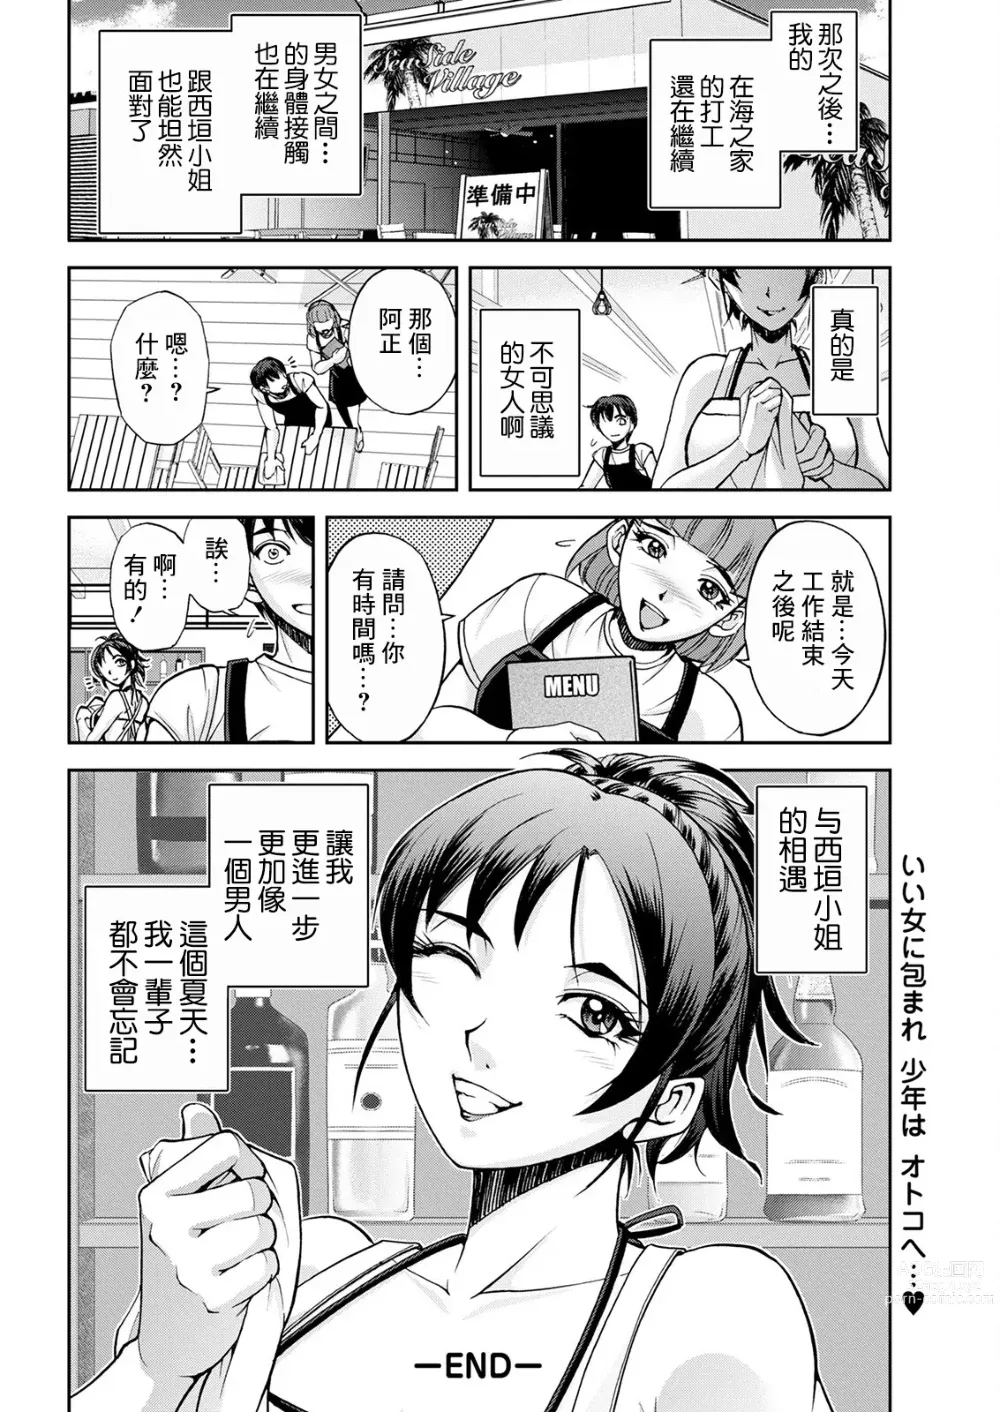 Page 20 of manga Umi no Ie no Nishigaki-san Kouhen